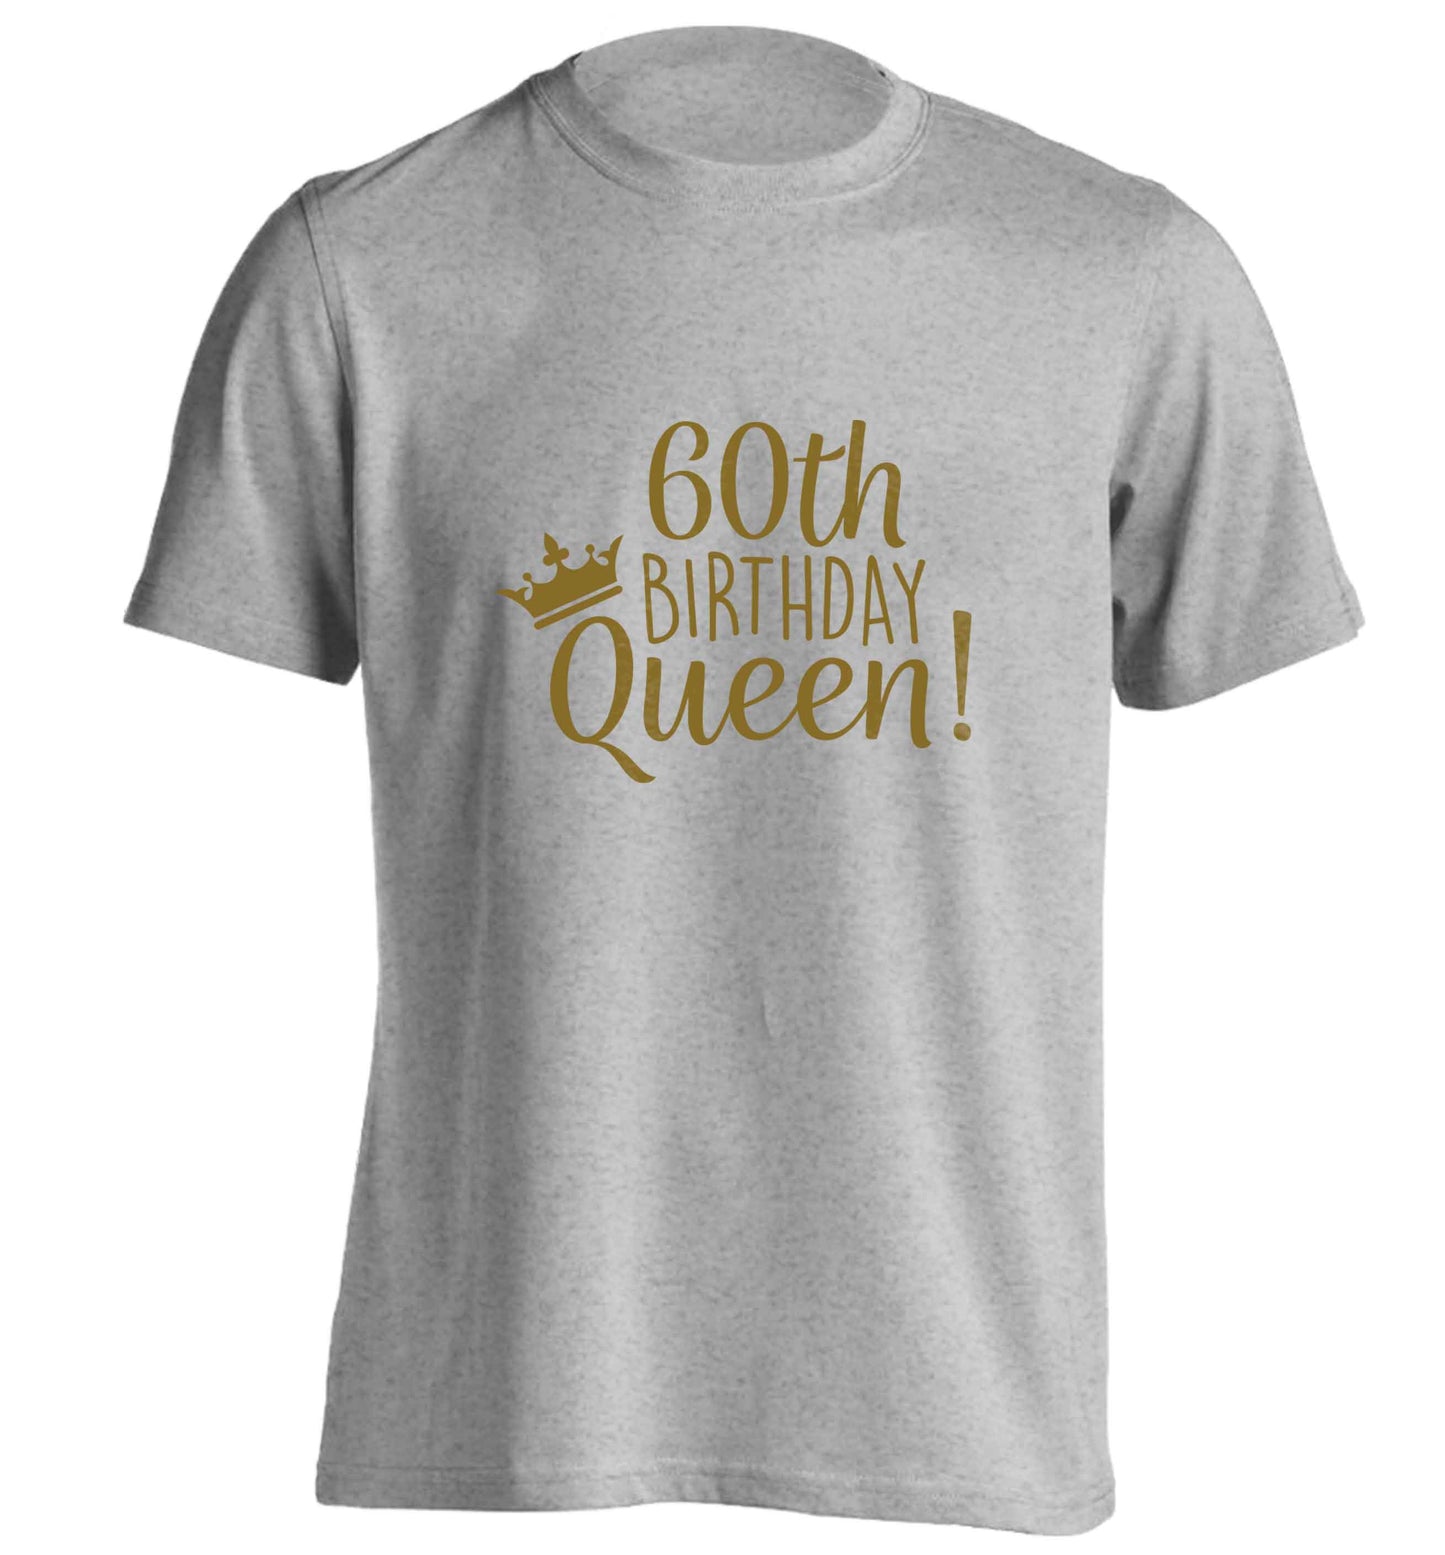 60th birthday Queen adults unisex grey Tshirt 2XL